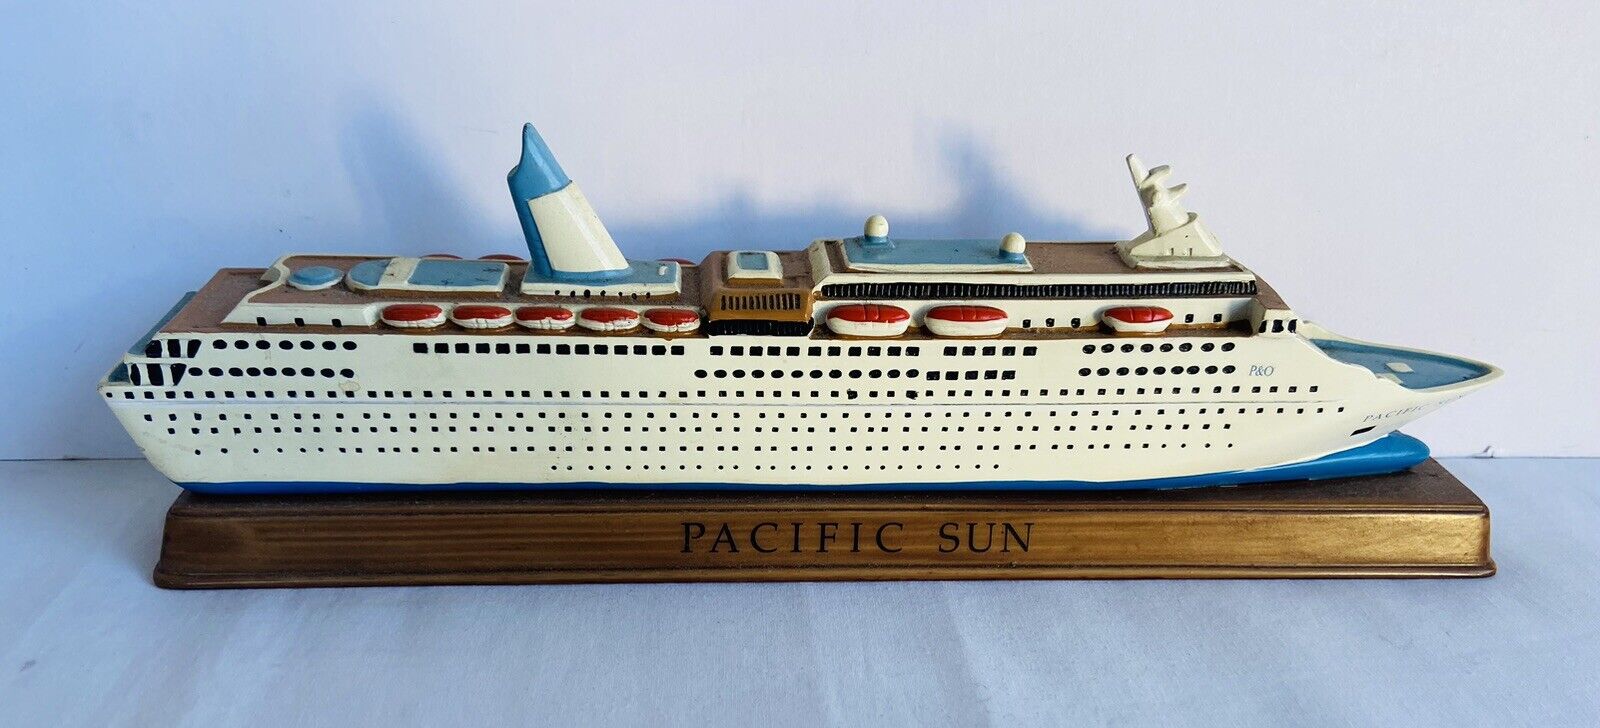 P&O Pacific Sun Cruise Ship Pacific Dawn Collectable Souvenir Resin Model Boat